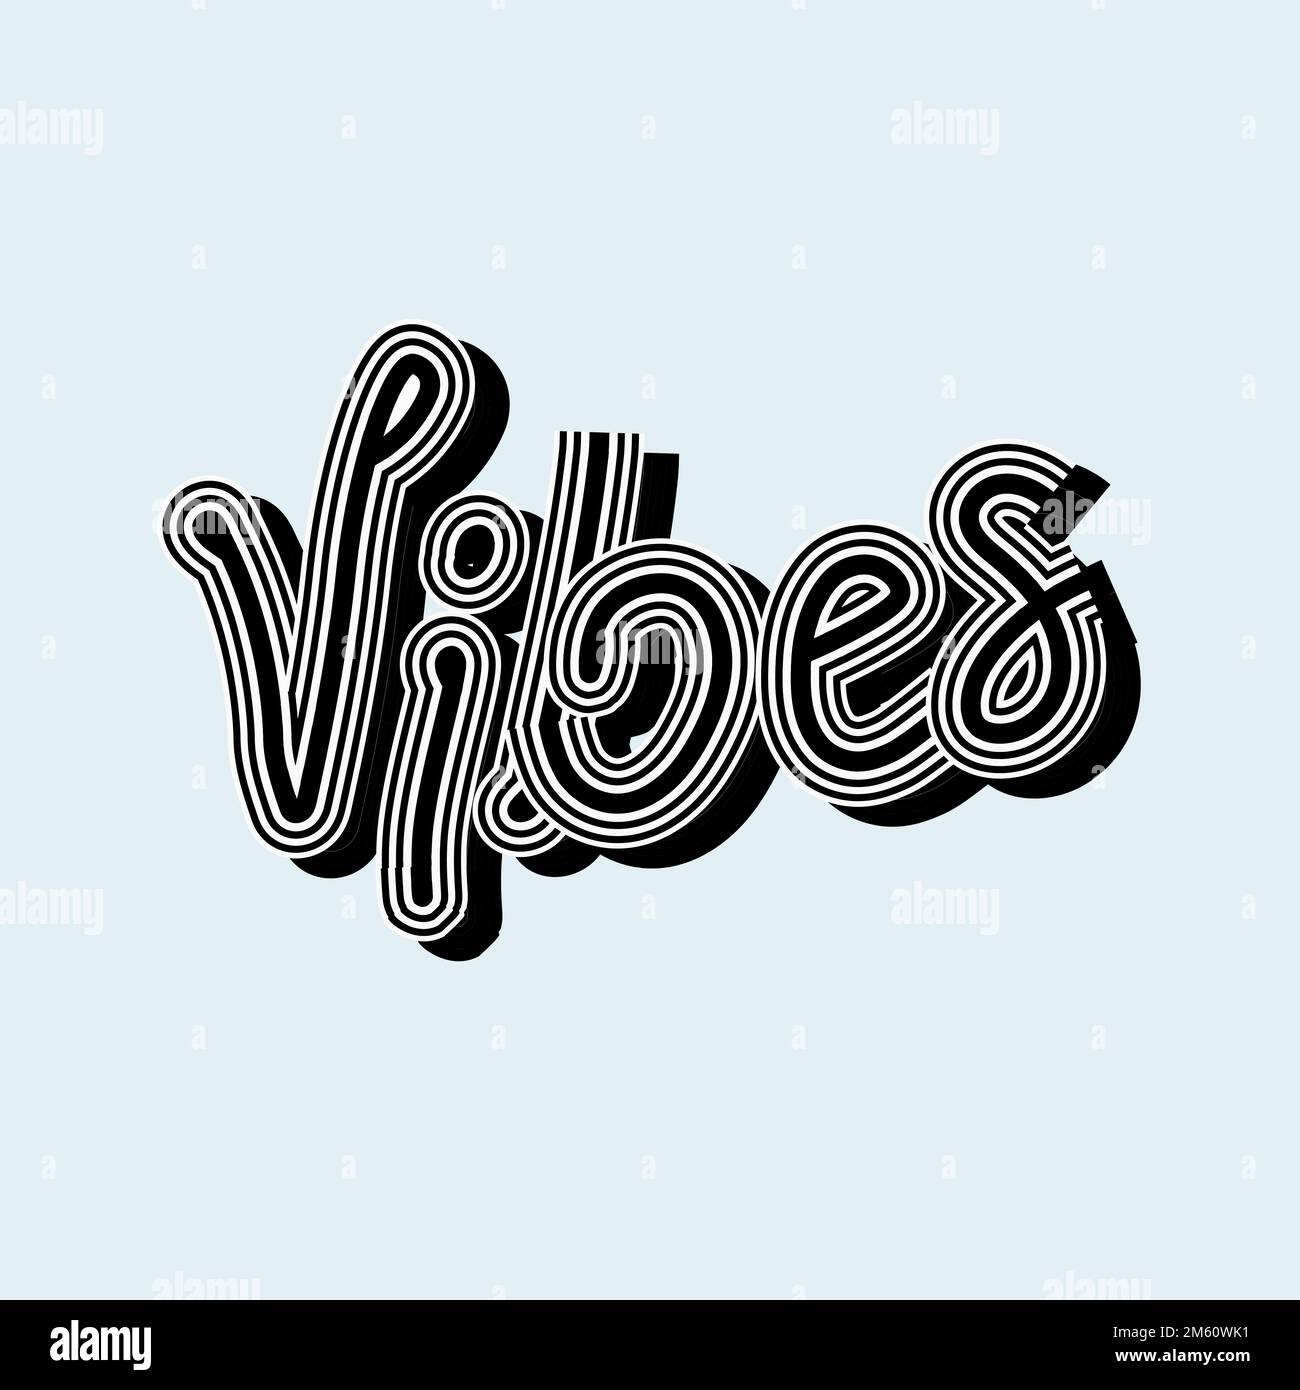 Vintage-Graustufen-Vibes-Vektor-kursive Schriftarttypografie Stock Vektor